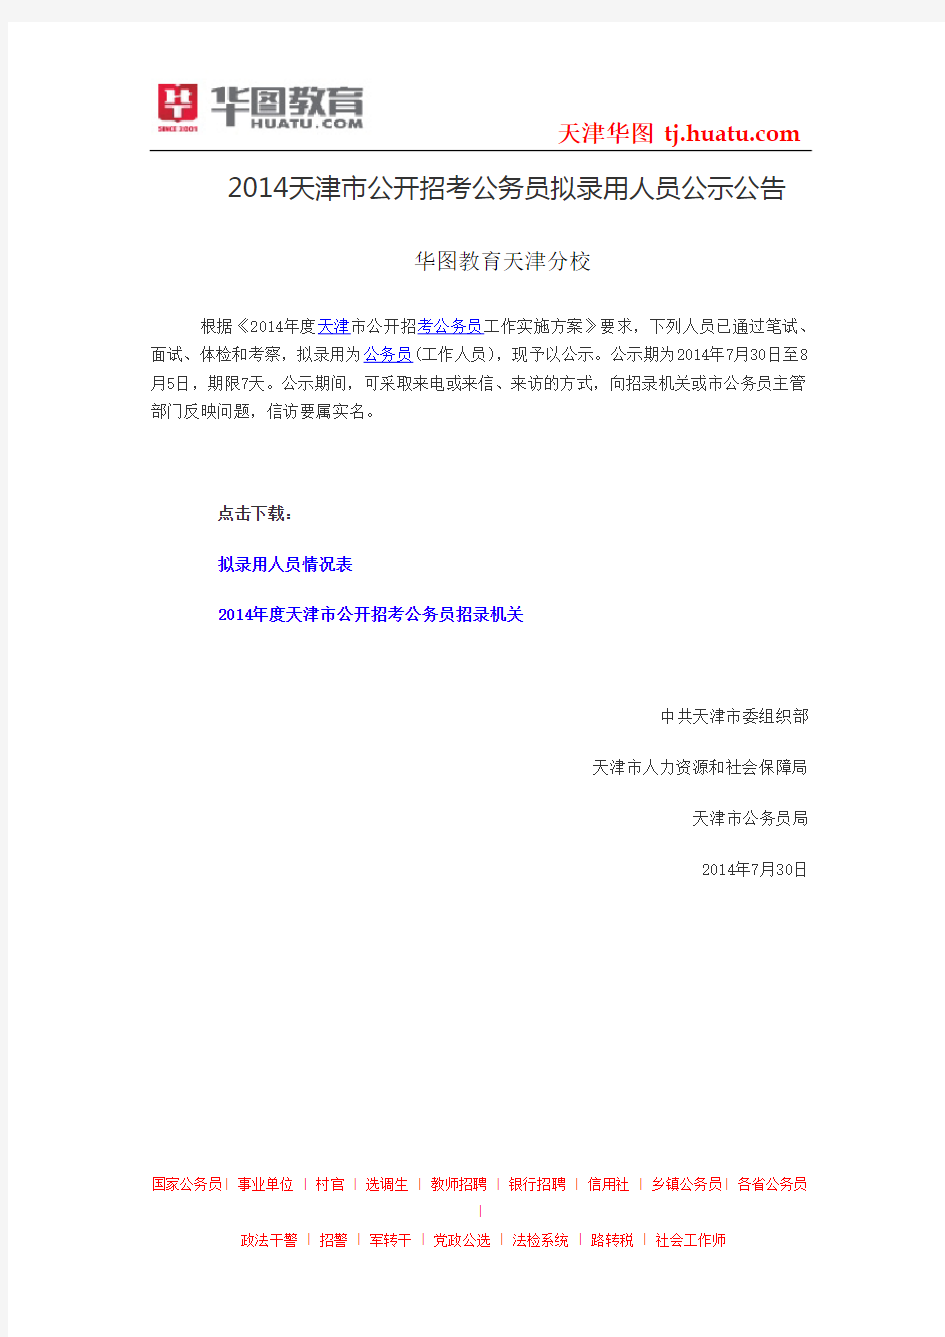 2014天津市公开招考公务员拟录用人员公示公告